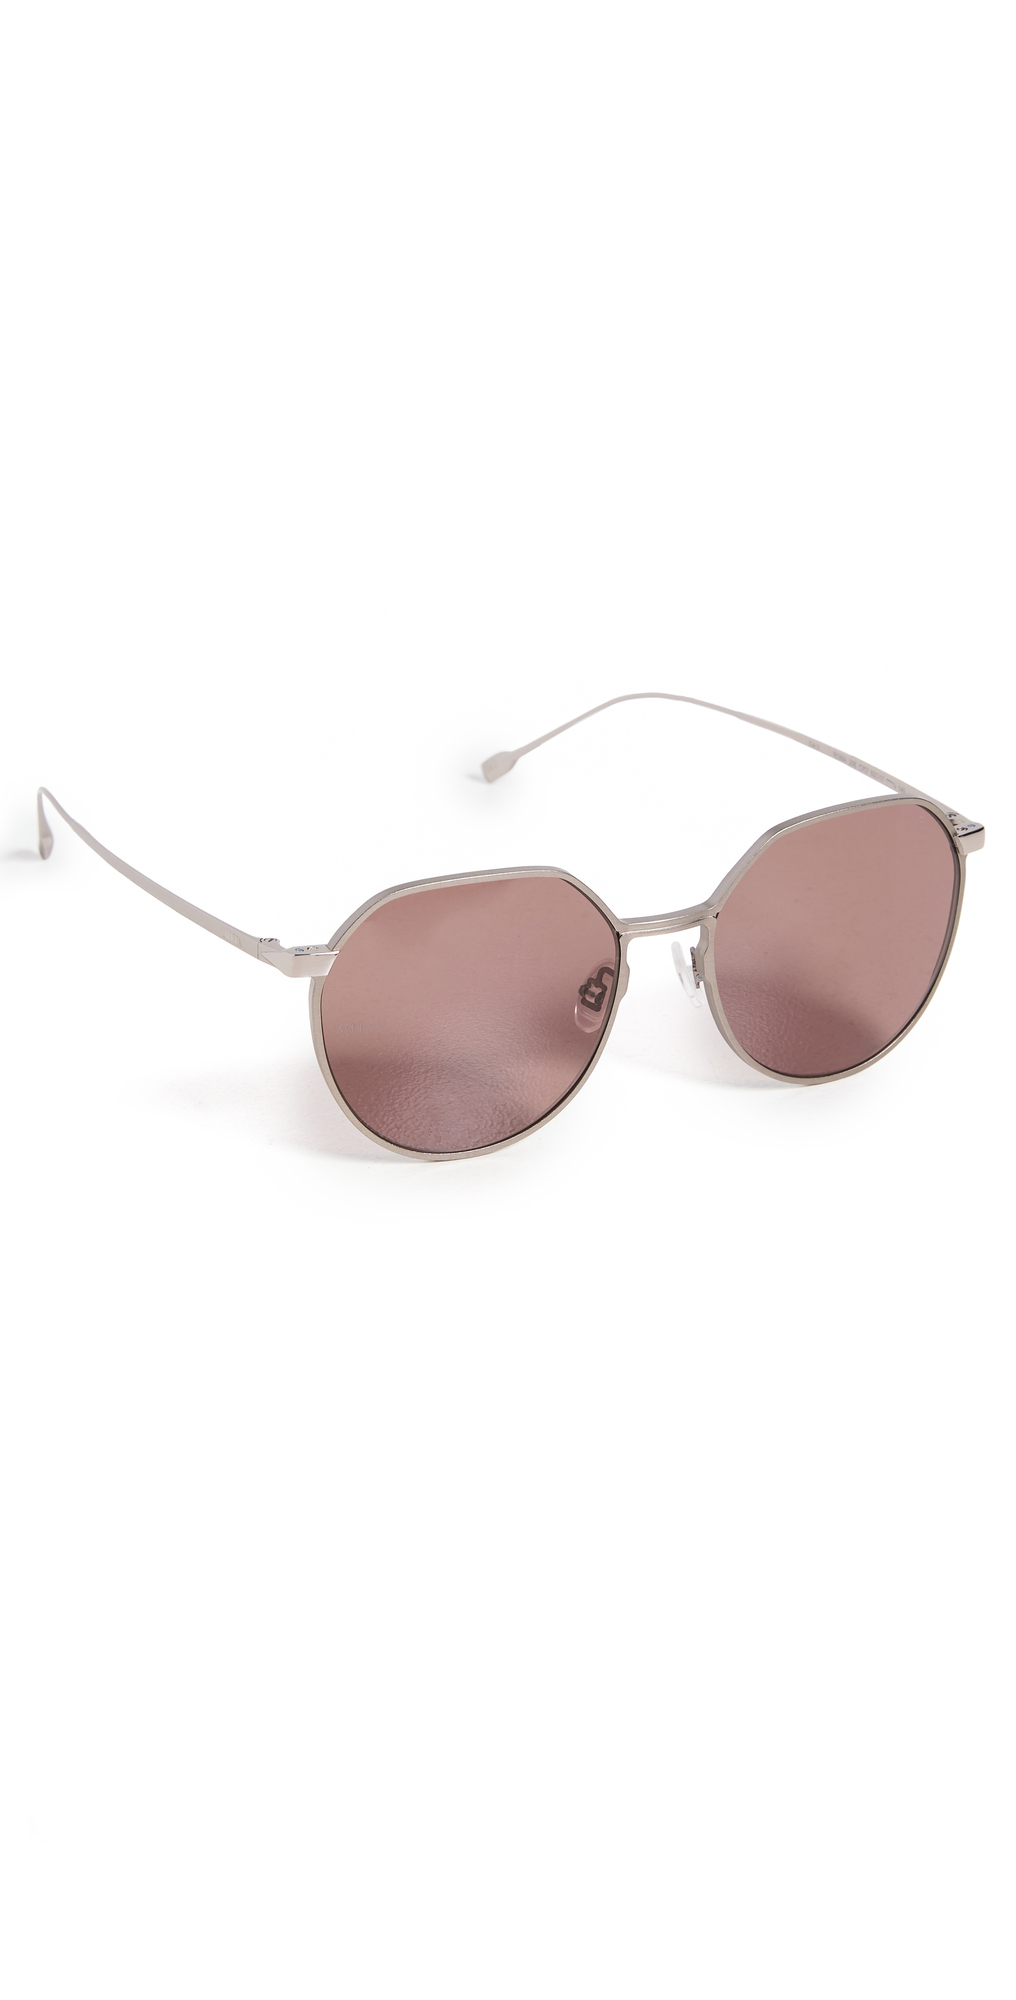 MITA Roma 20E Sunglasses in brown / grey